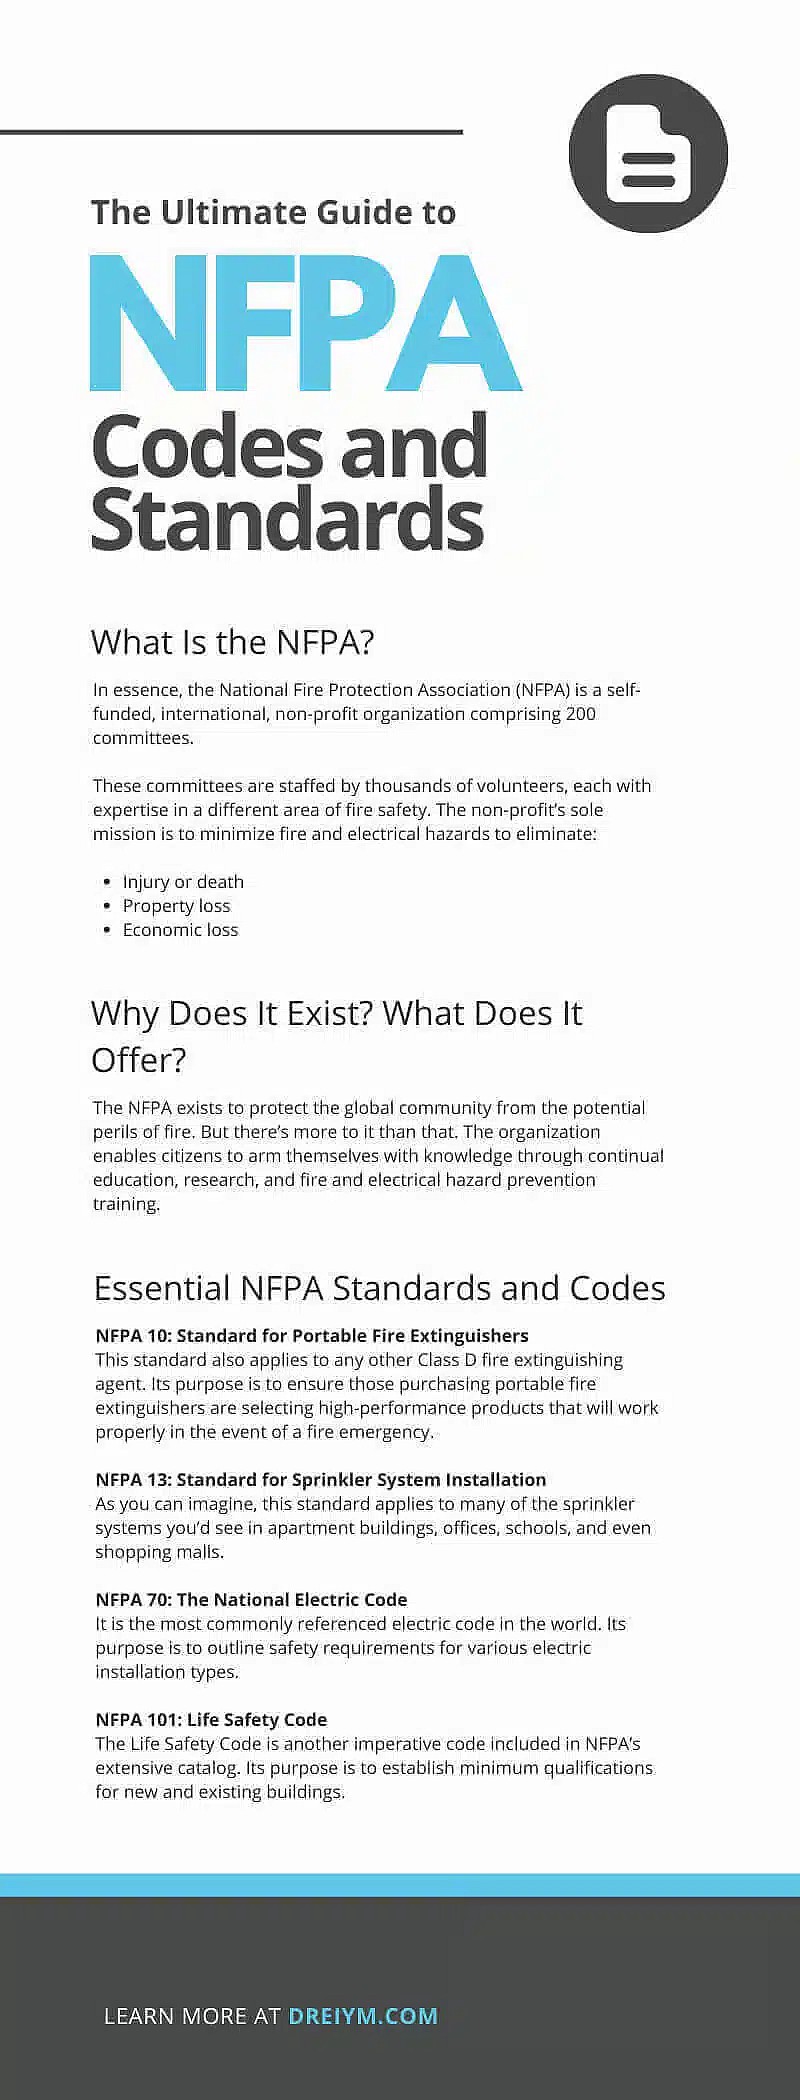 Der ultimative Leitfaden für NFPA Codes und Standards